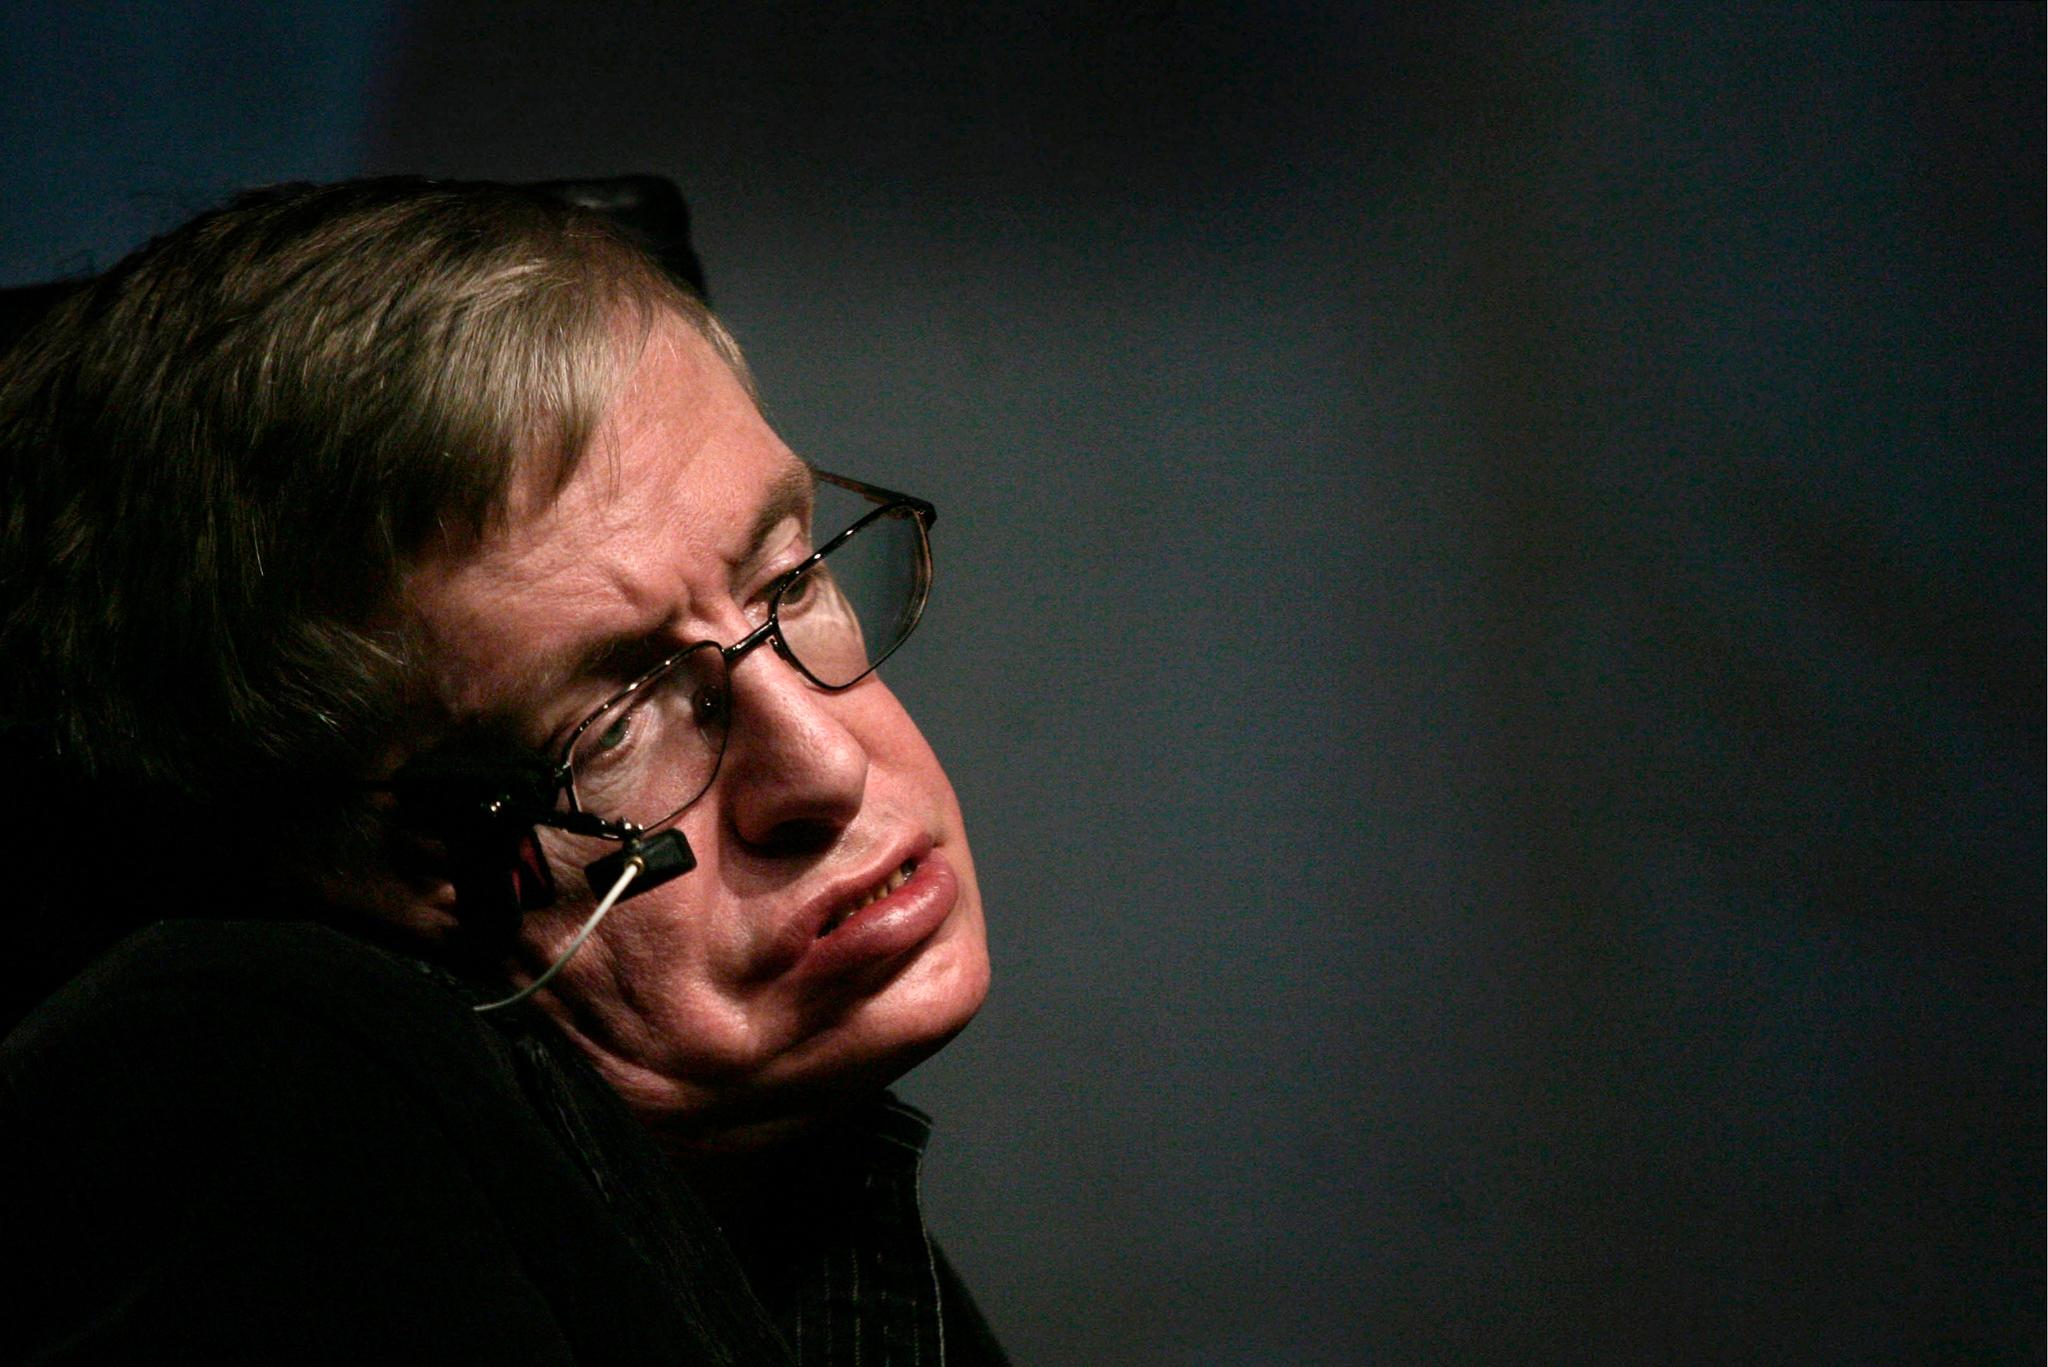  Hawking var opptatt av at menneskeheten må forberede seg på at ulike globale katastrofer kan skje, og at de vil være en utfordring for livet på Jorden.  